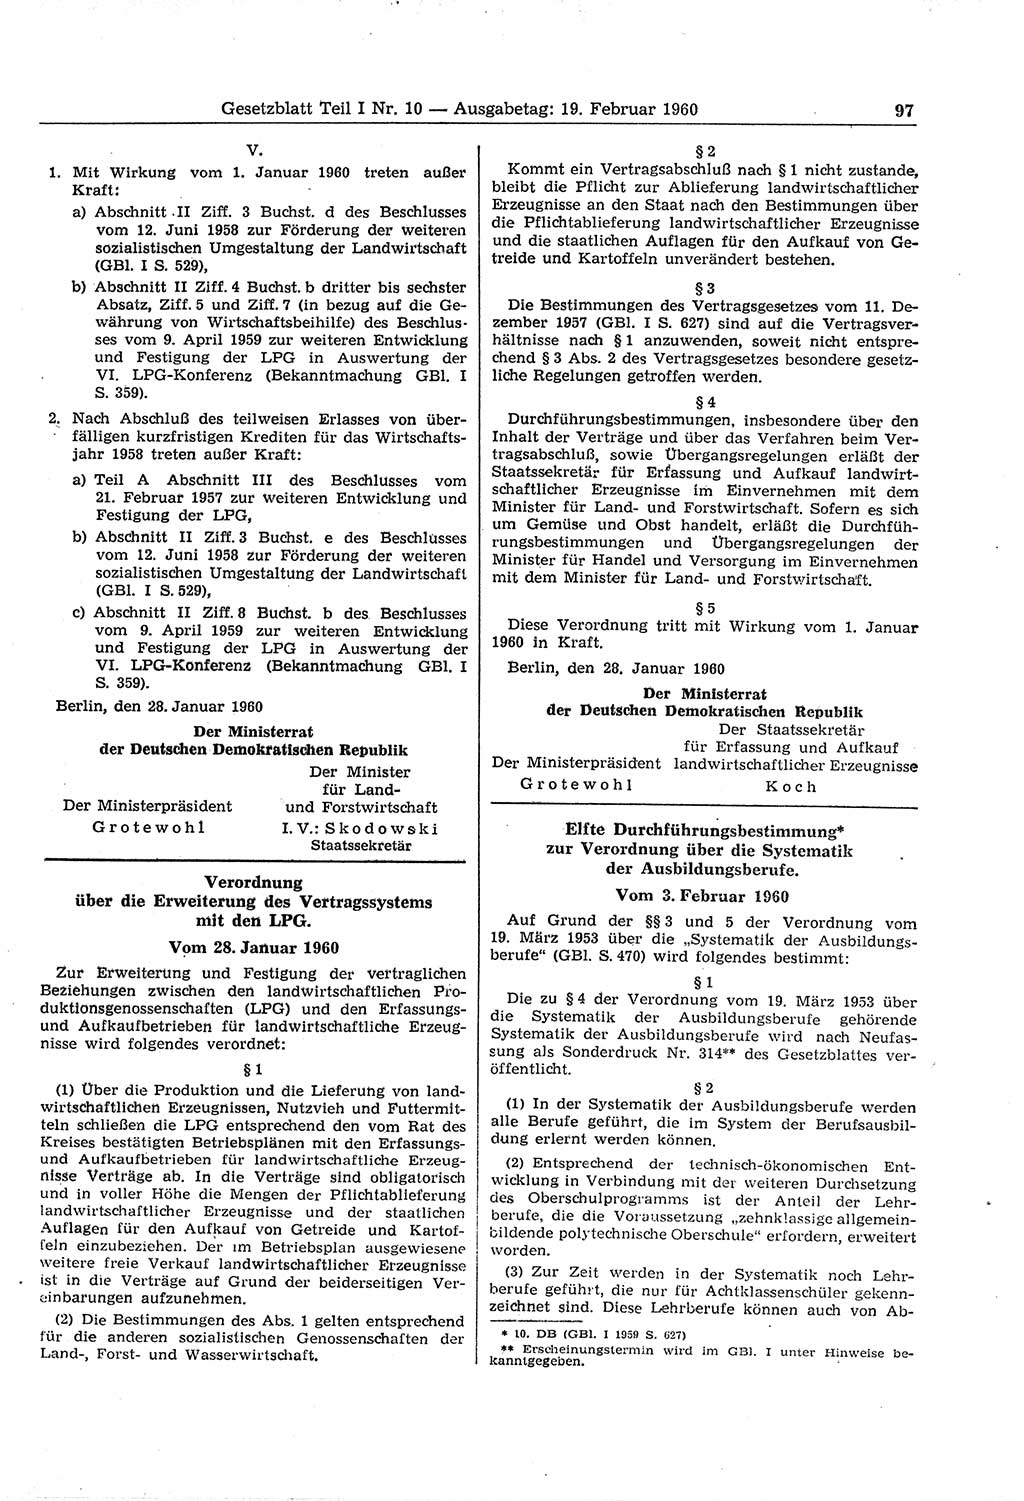 Gesetzblatt (GBl.) der Deutschen Demokratischen Republik (DDR) Teil Ⅰ 1960, Seite 97 (GBl. DDR Ⅰ 1960, S. 97)